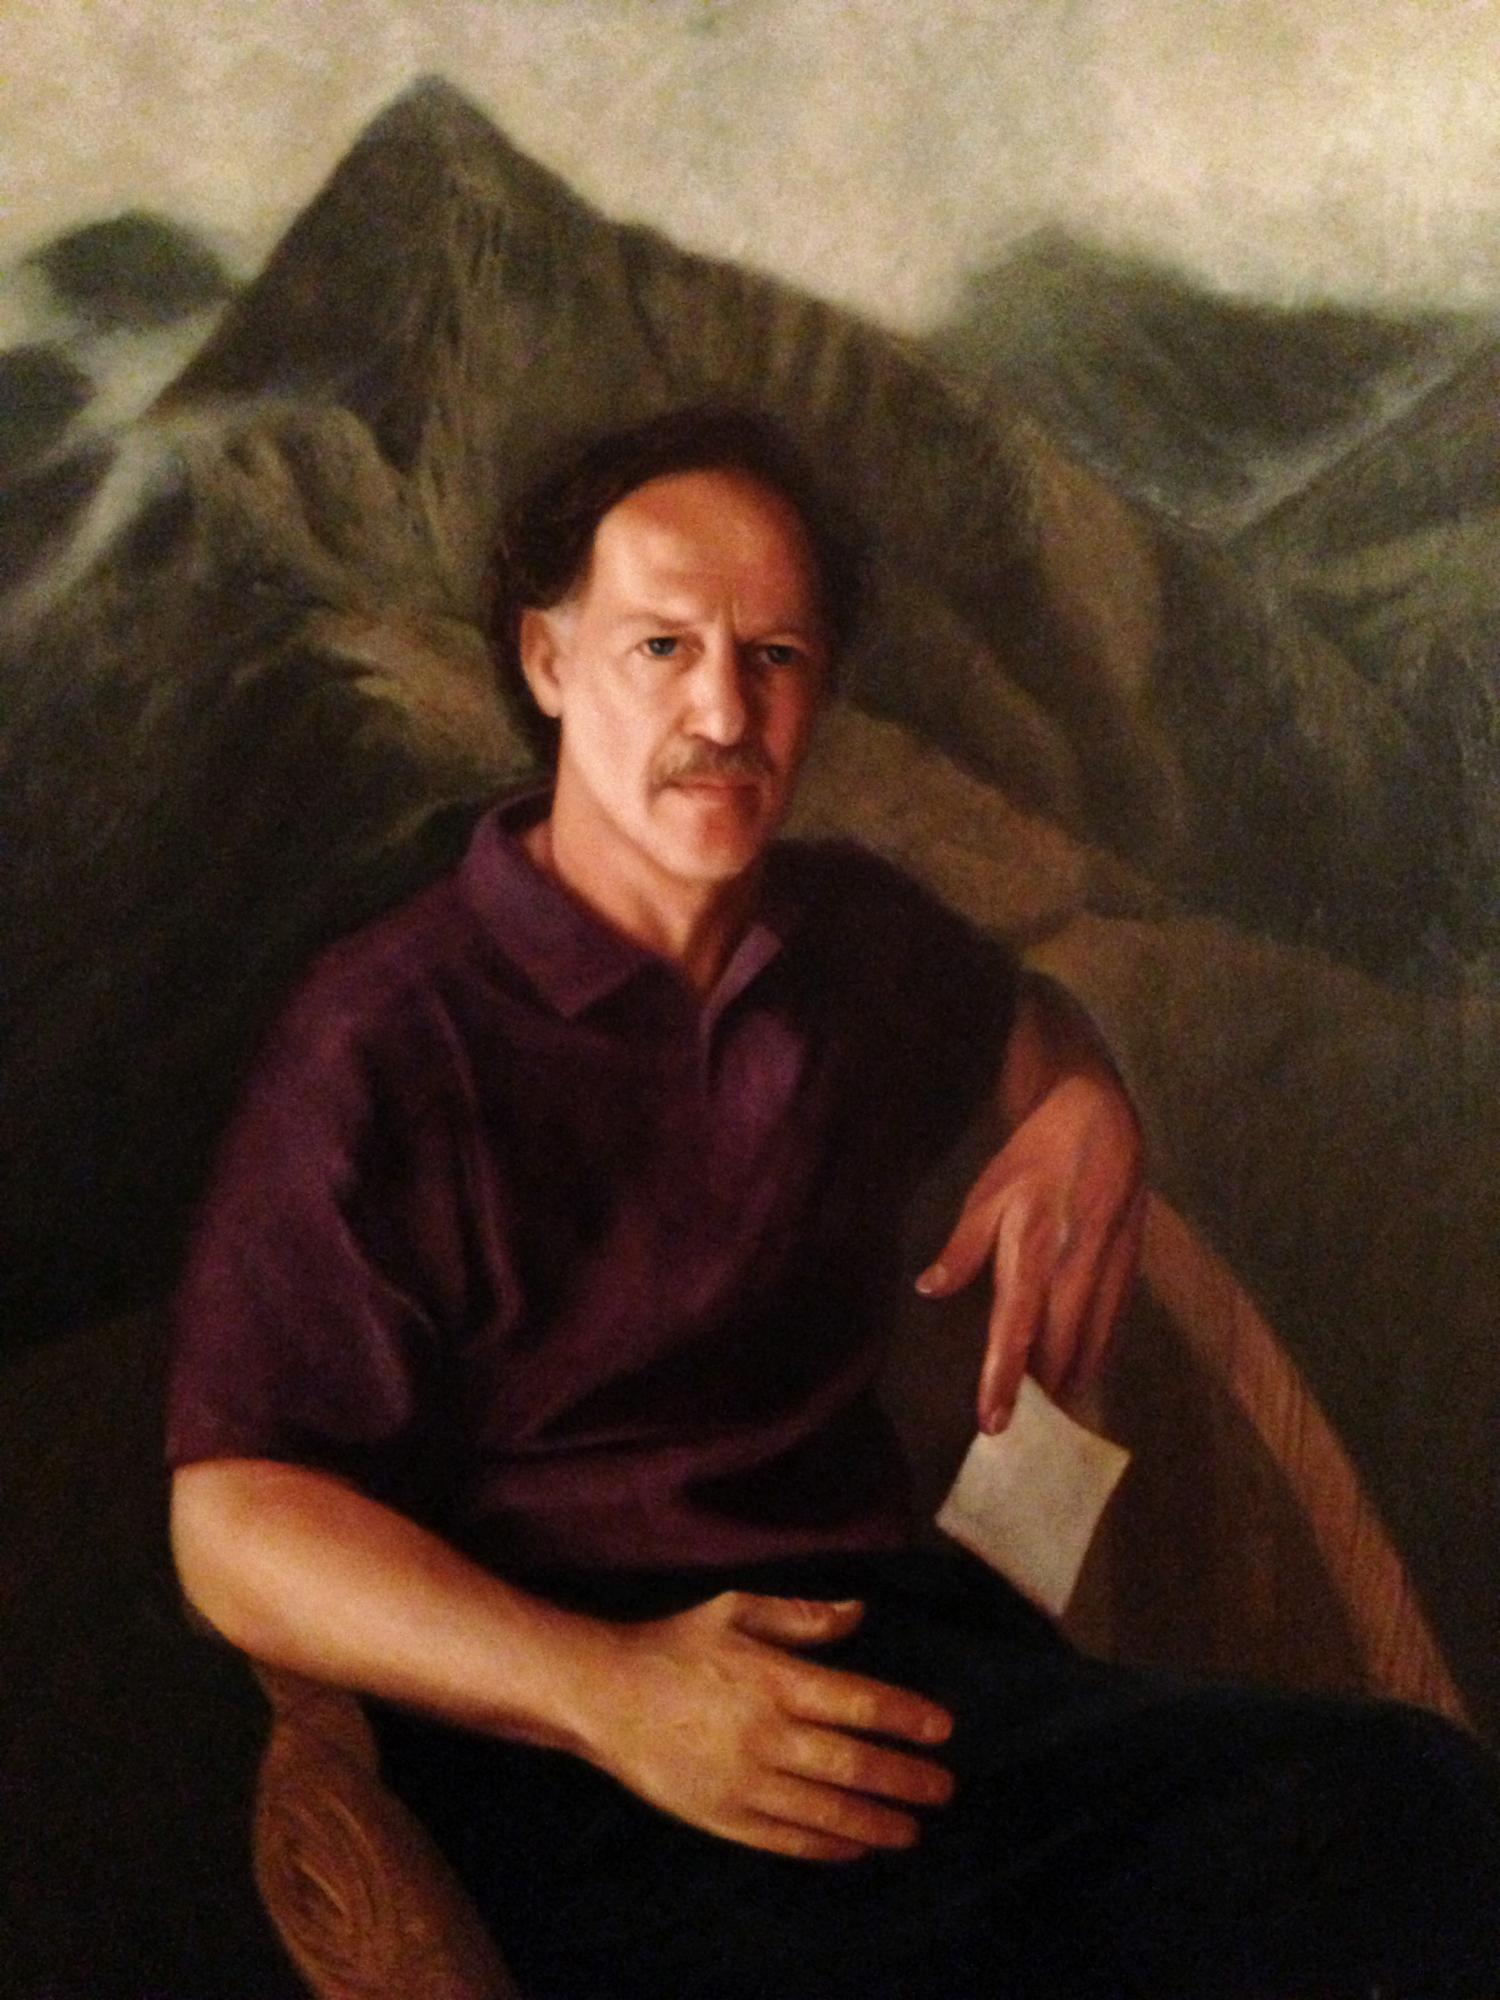 Portrait of Werner Herzog